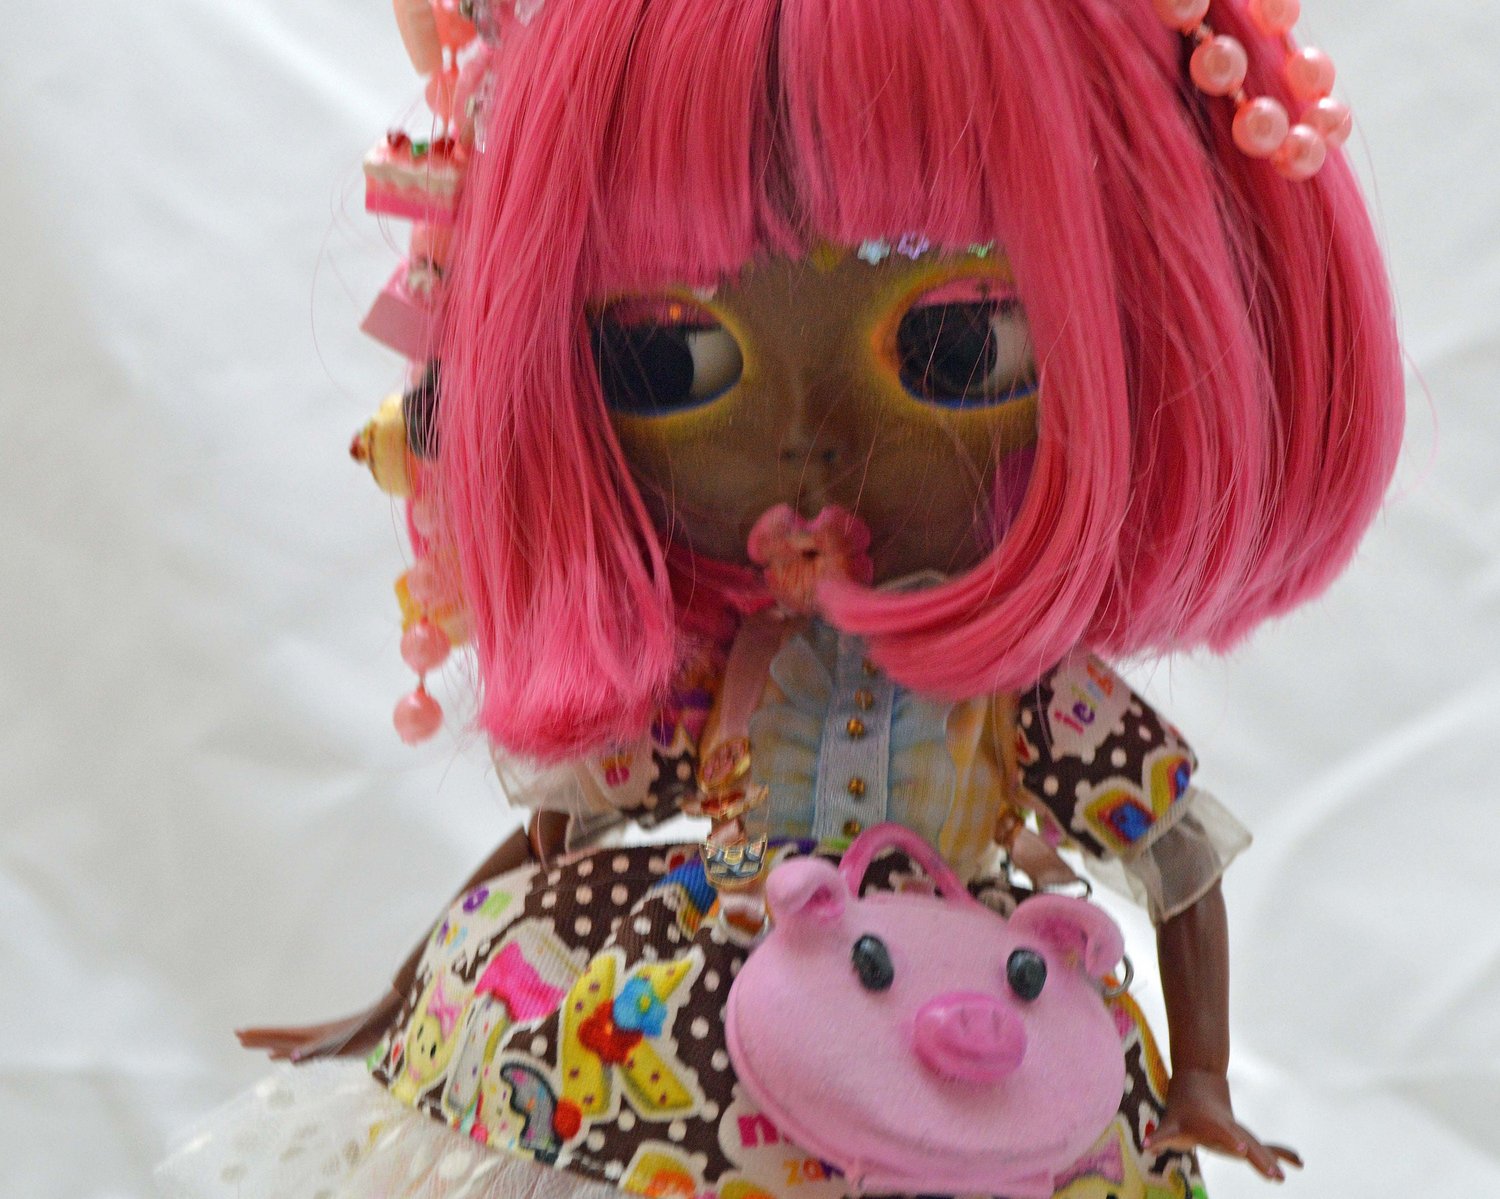 Custom lol omg doll. : r/Dolls